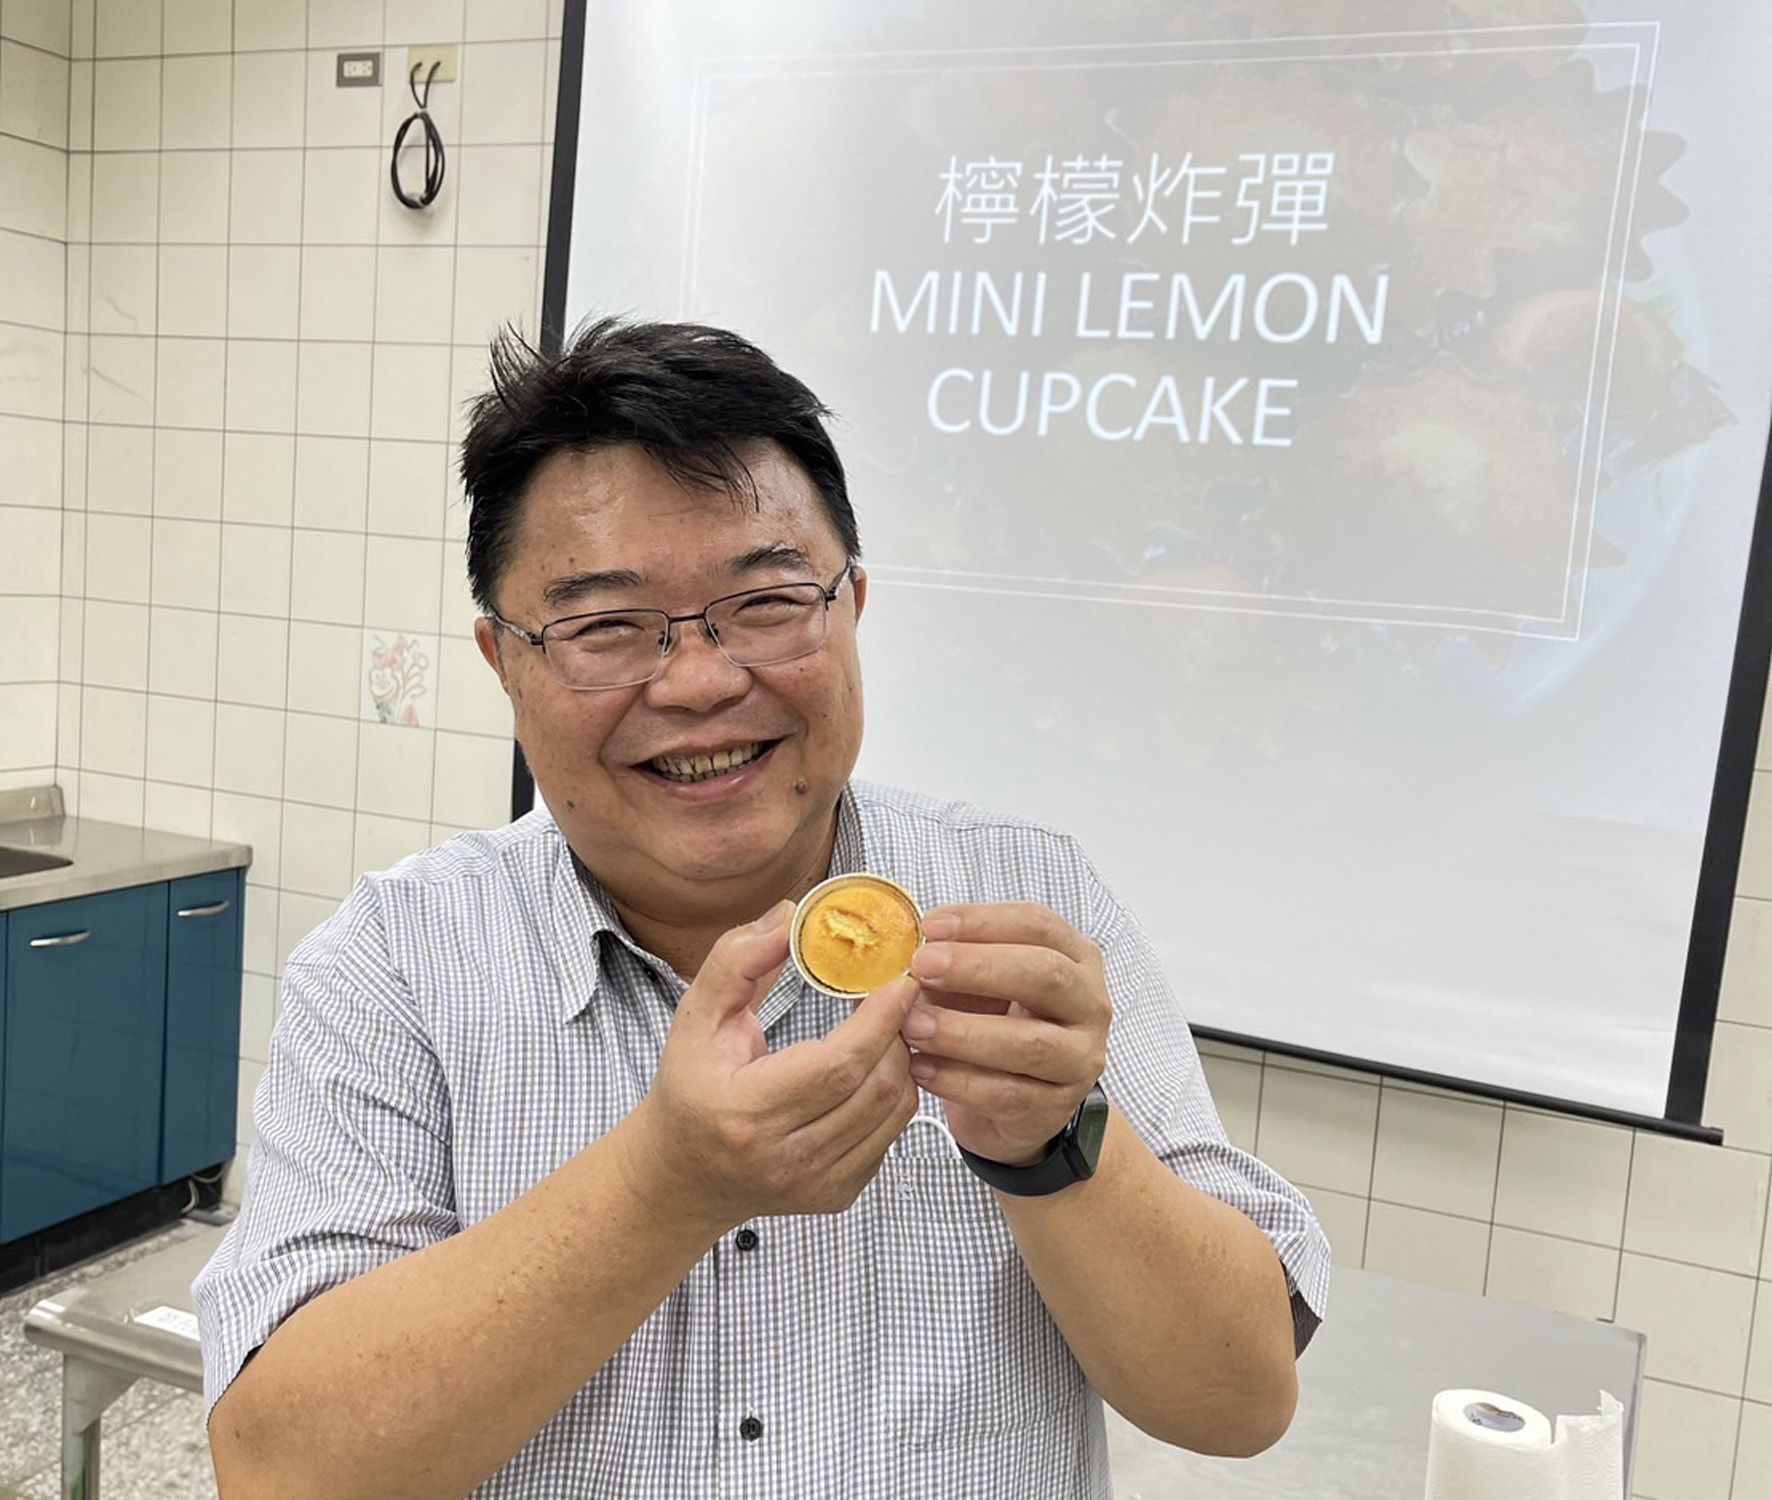 張俊峰認為家政課也可以代入雙語概念，例如甜點「檸檬炸彈」的英文名稱為Mini Lemon Cupcake。